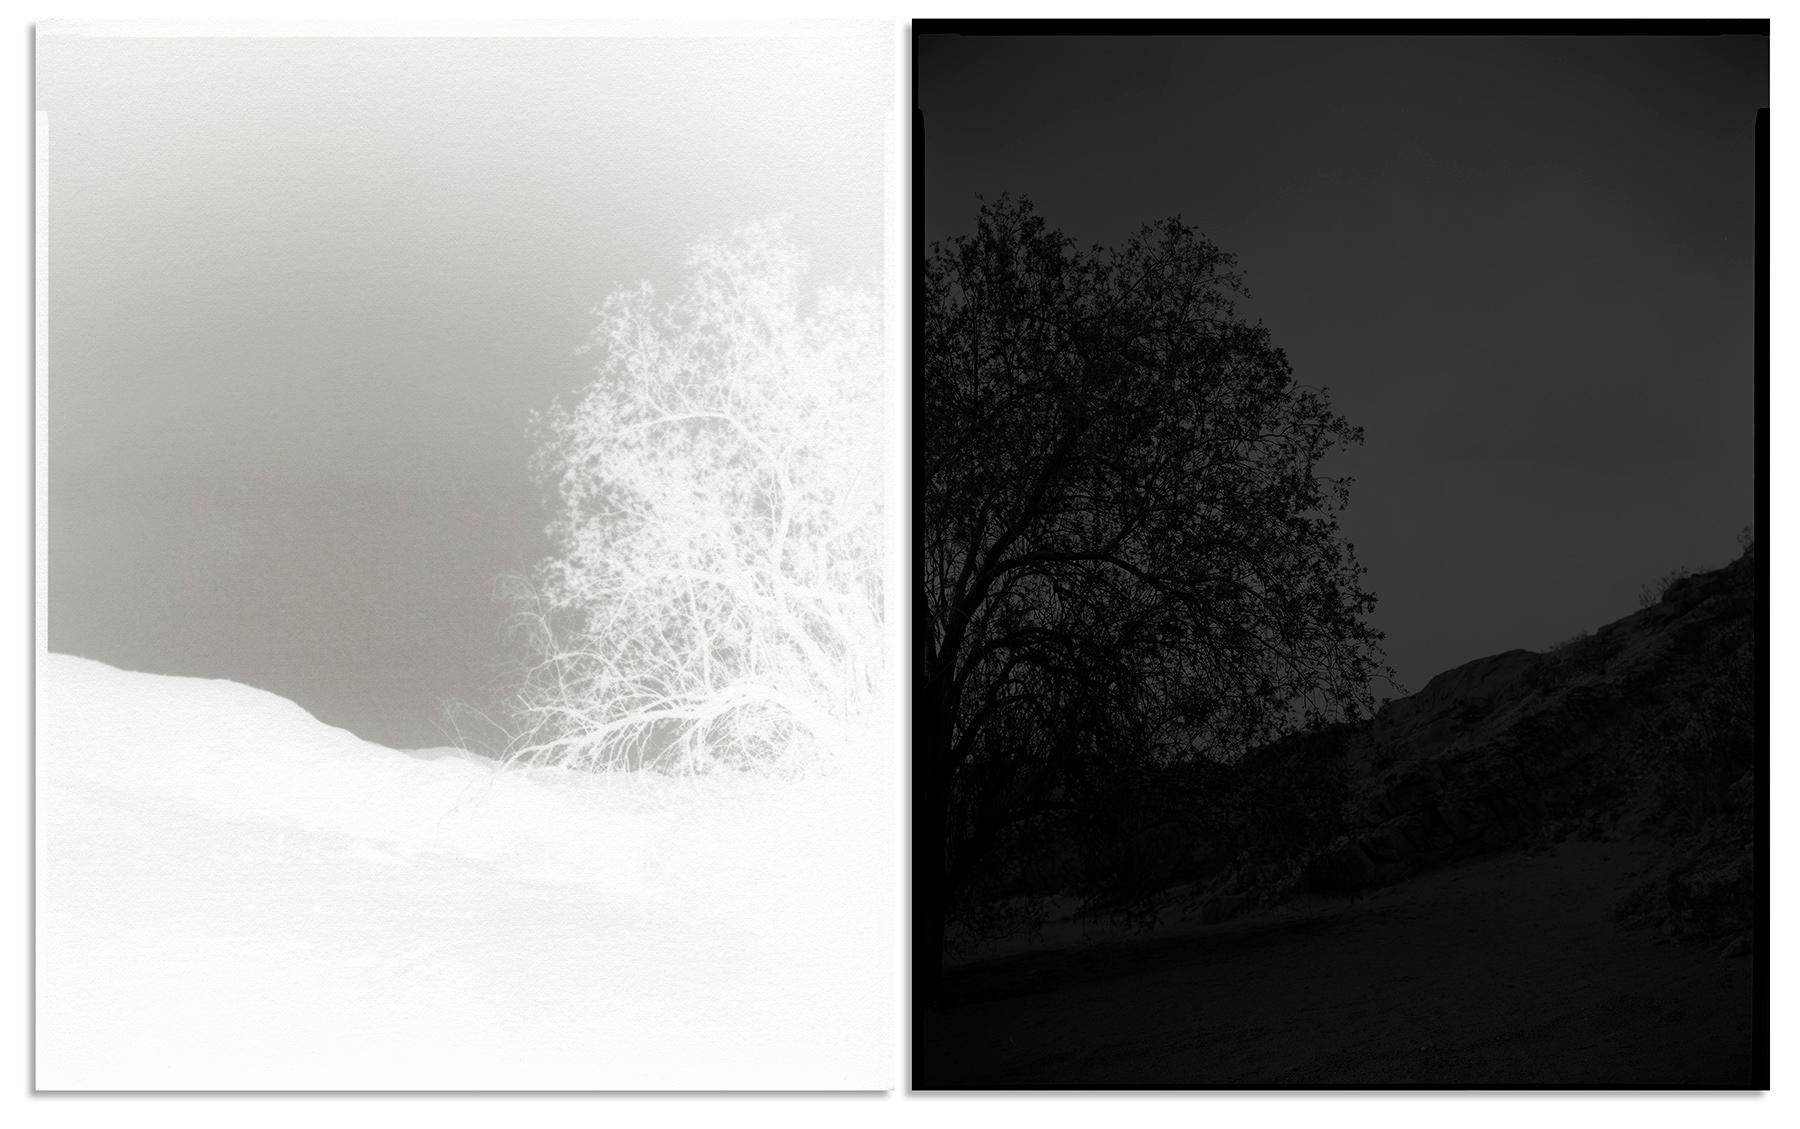 Black and White Photograph scott b. davis - Tree en bois de fer, près de la montagne de Borrego, Californie, 2018